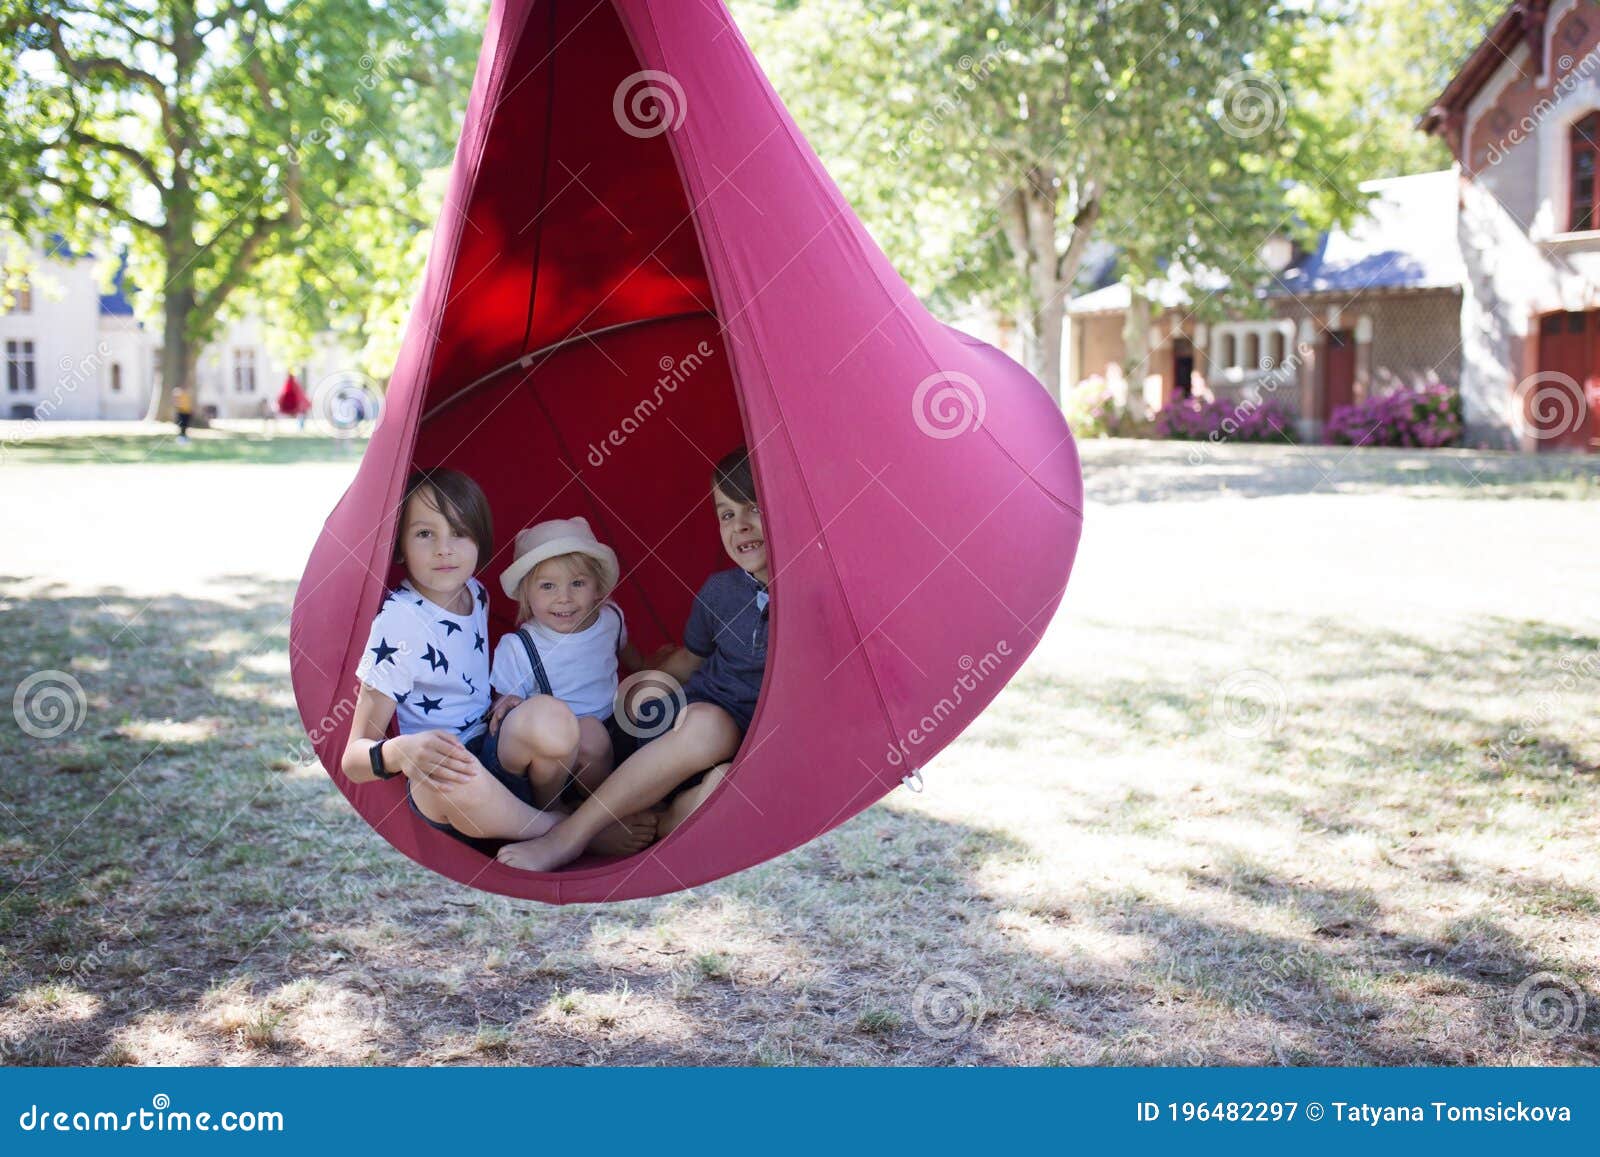 three children, boys swinging in a big cloth swing in a park